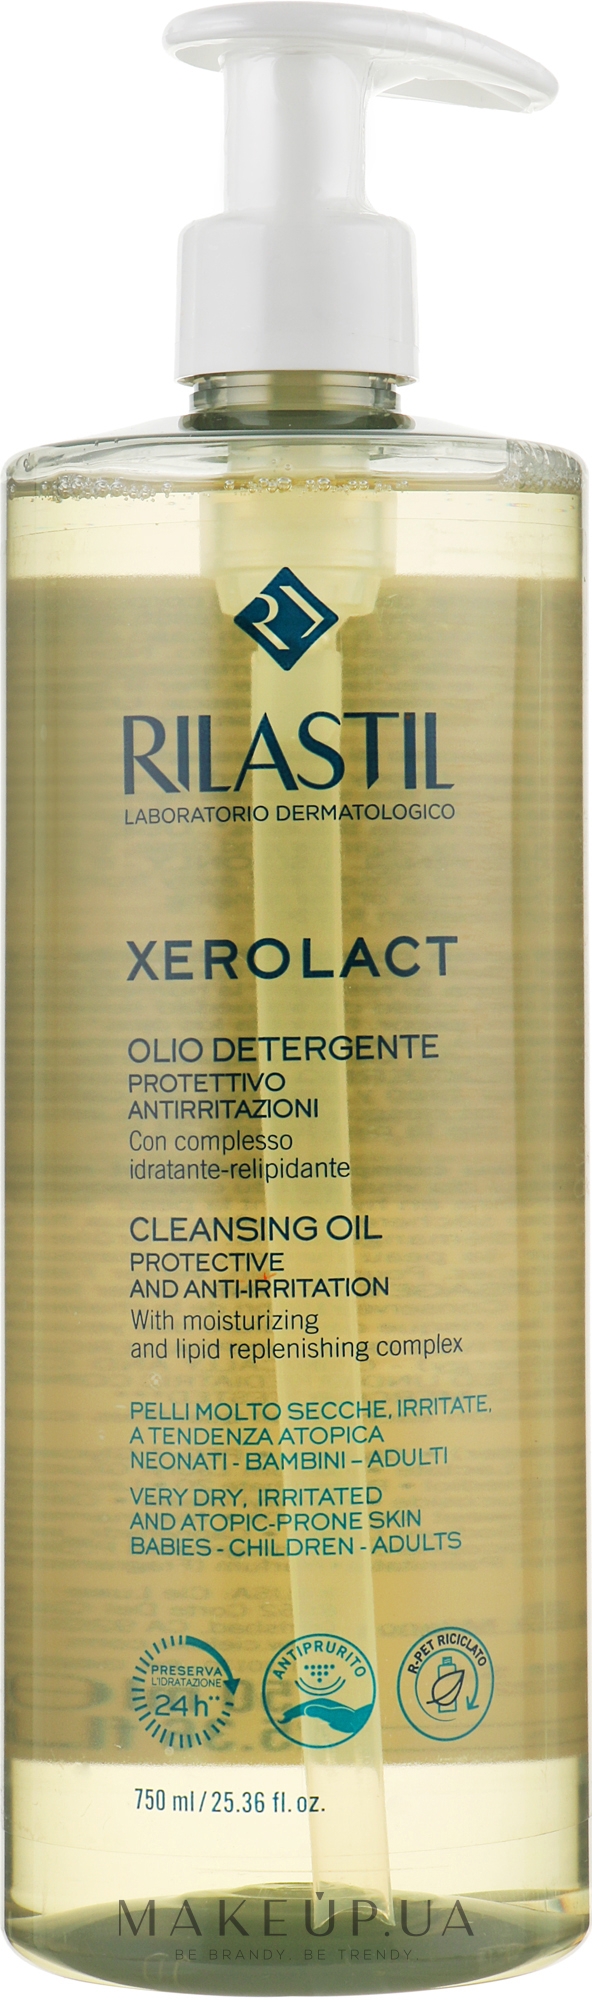 Очищающее масло для лица и тела для очень сухой, склонной к раздражению и атопии кожи - Rilastil Xerolact Cleansing Oil — фото 750ml